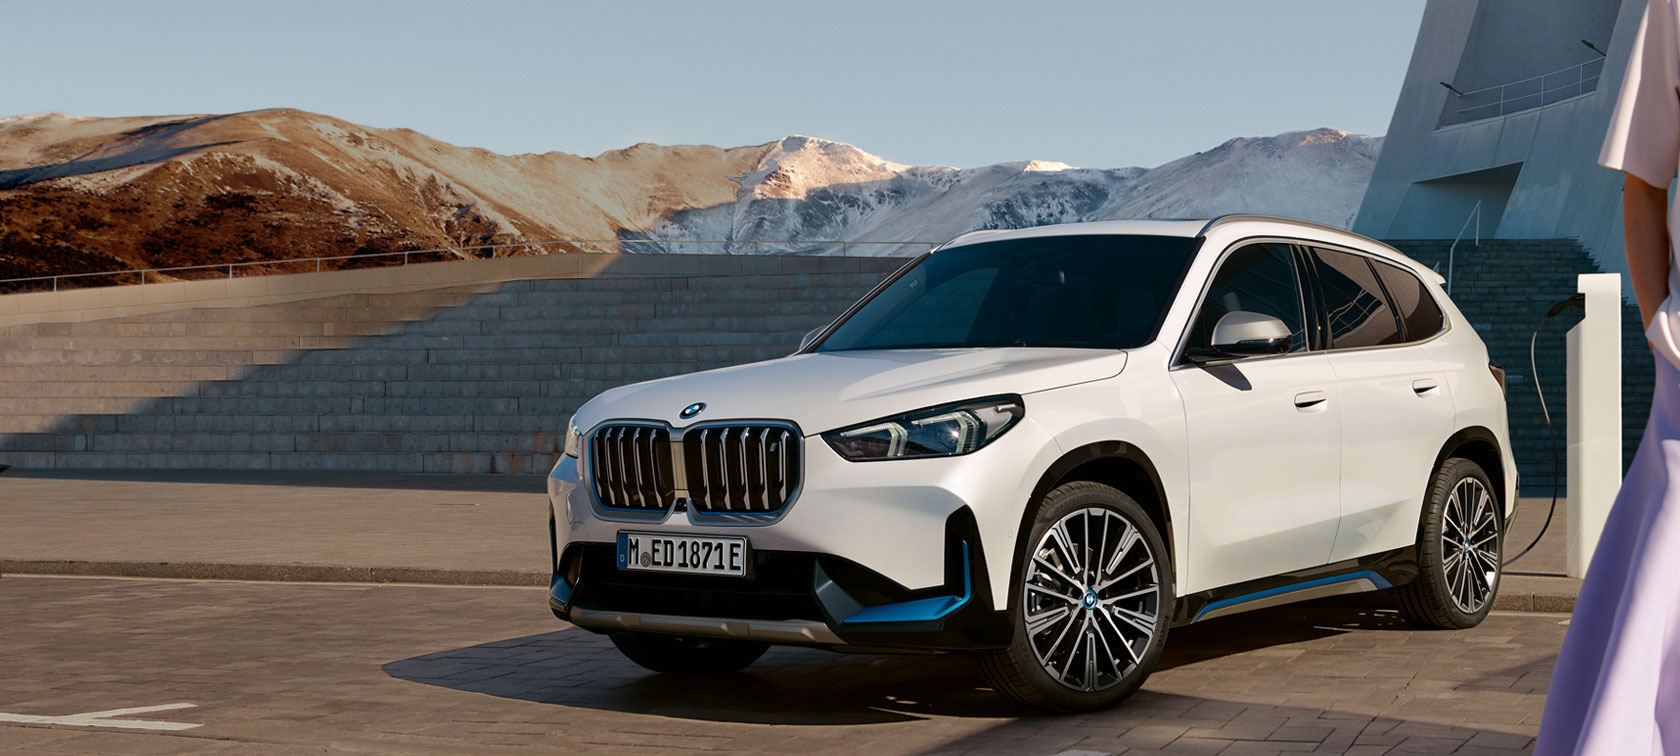 BMW AG Niederlassung Hannover: BMW Fahrzeuge, Services, Angebote